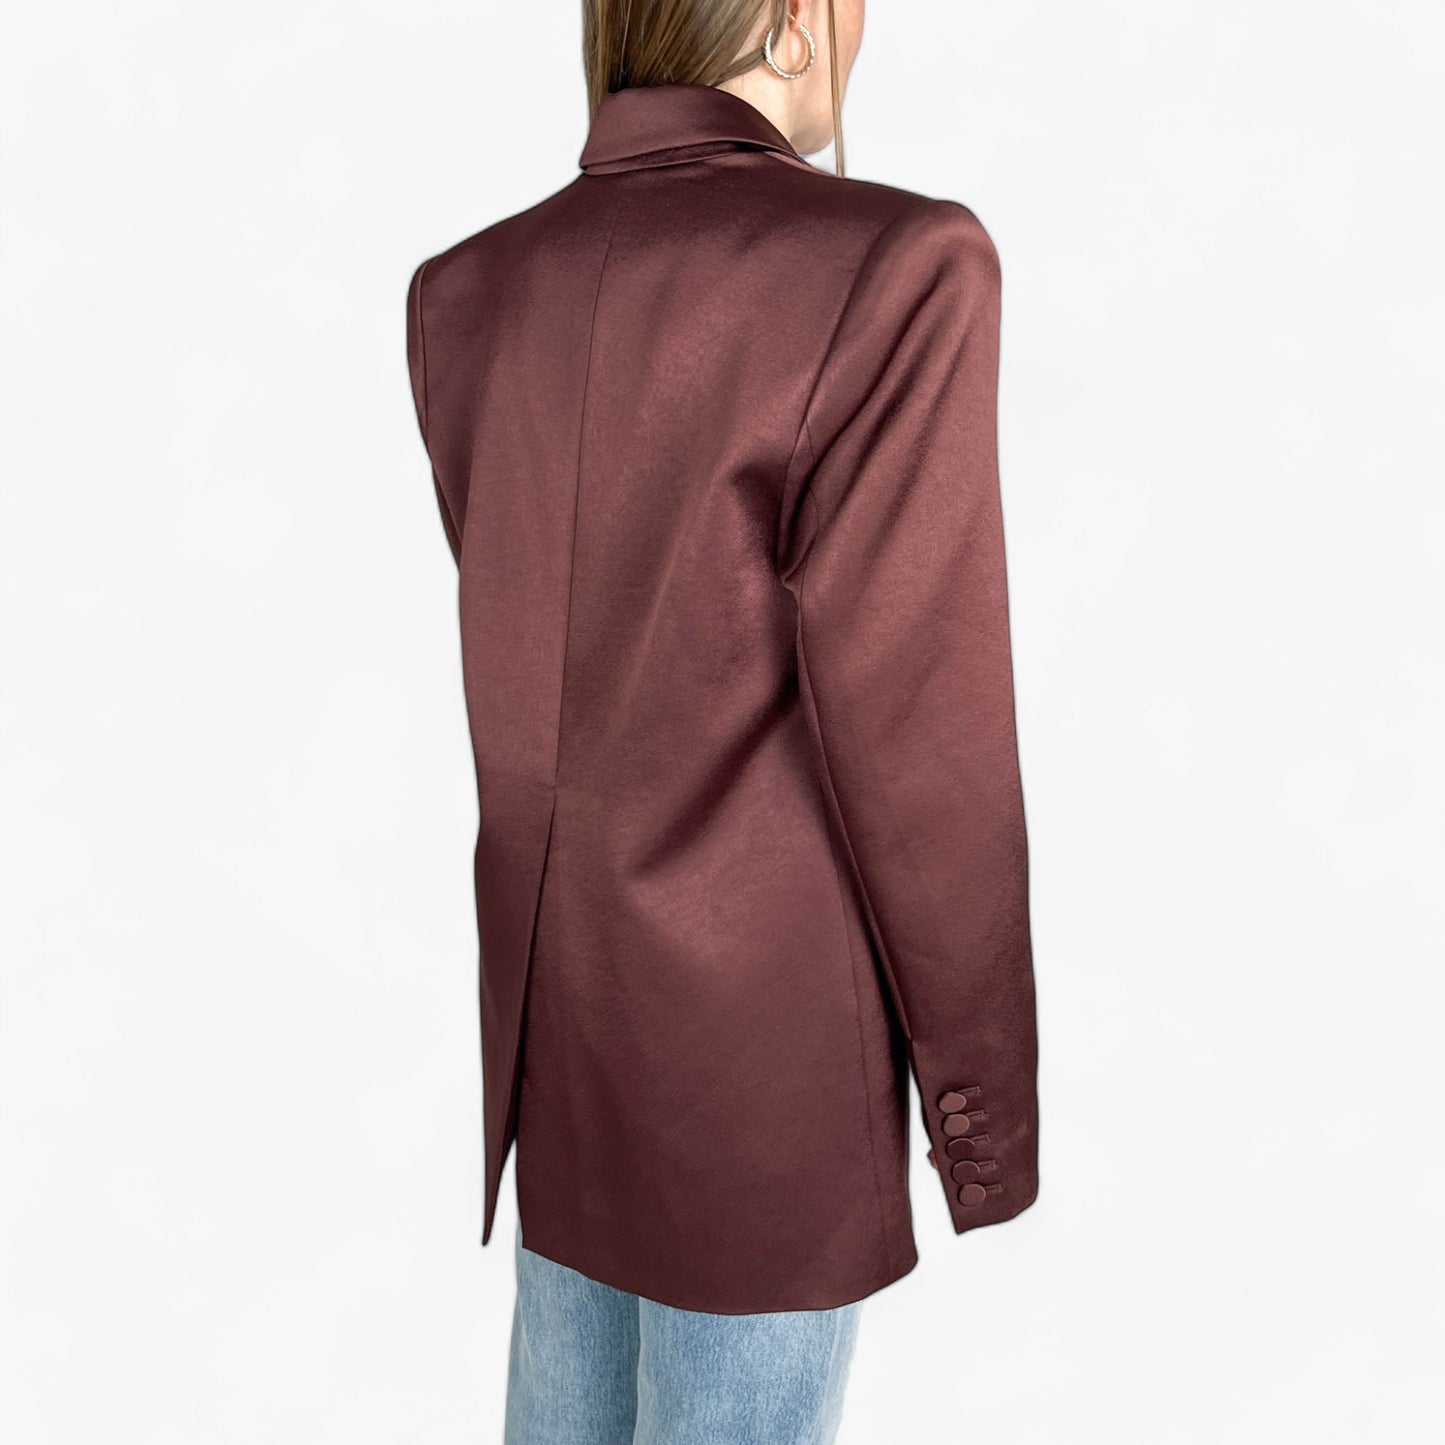 Alex Perry Brown Oversized Structured Blazer Jacket 8